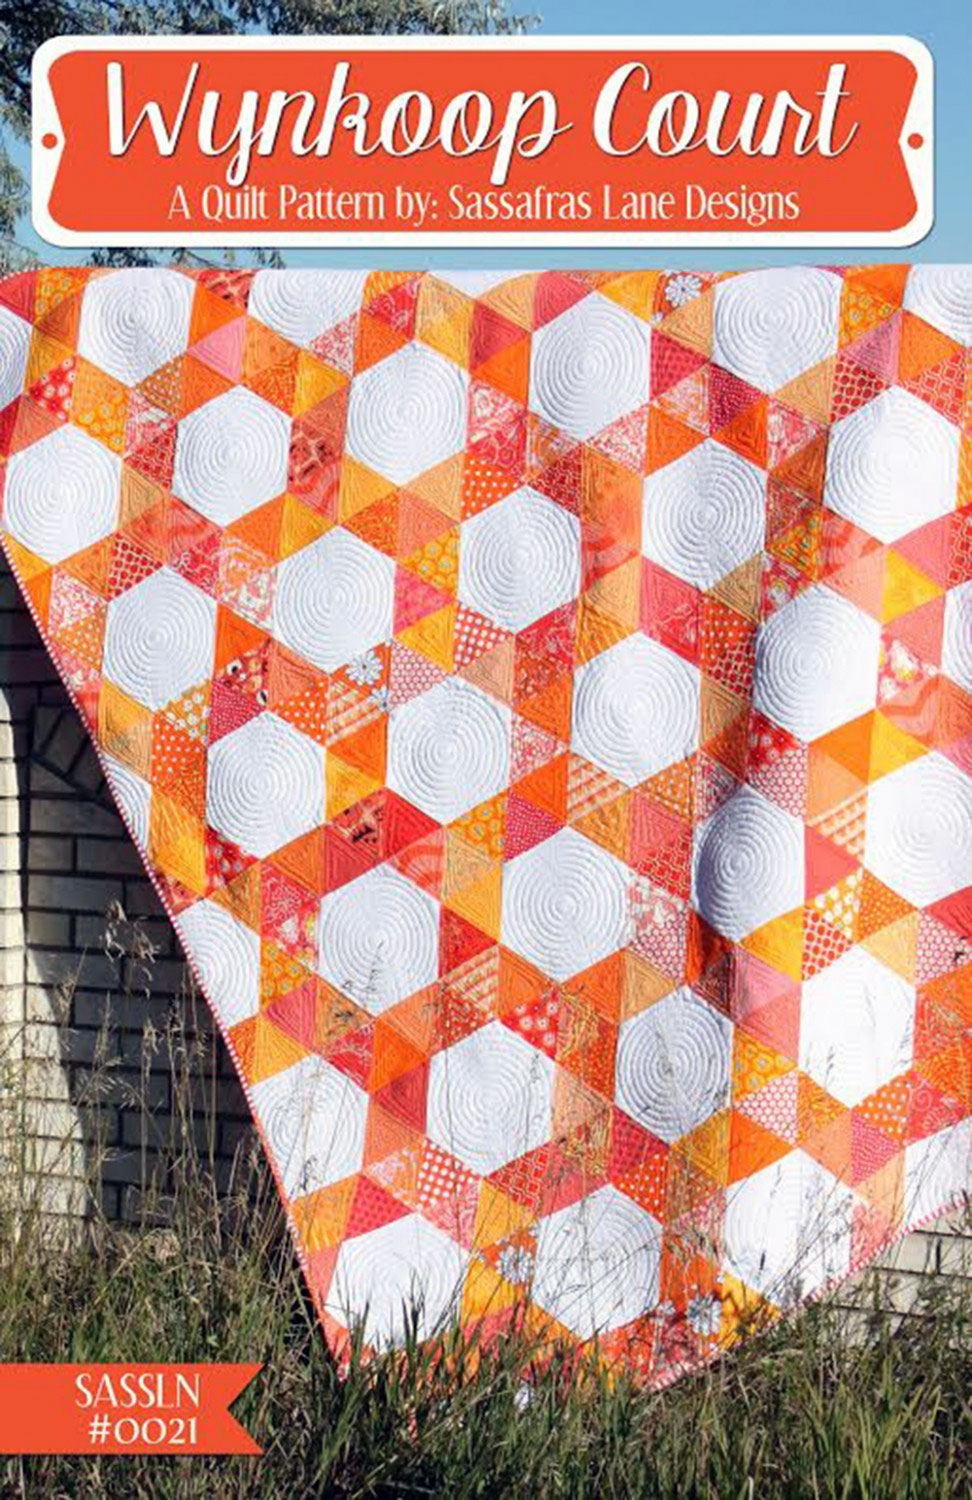 Wynkoop-Court-quilt-sewing-pattern-Sassafras-Lane-Designs-front